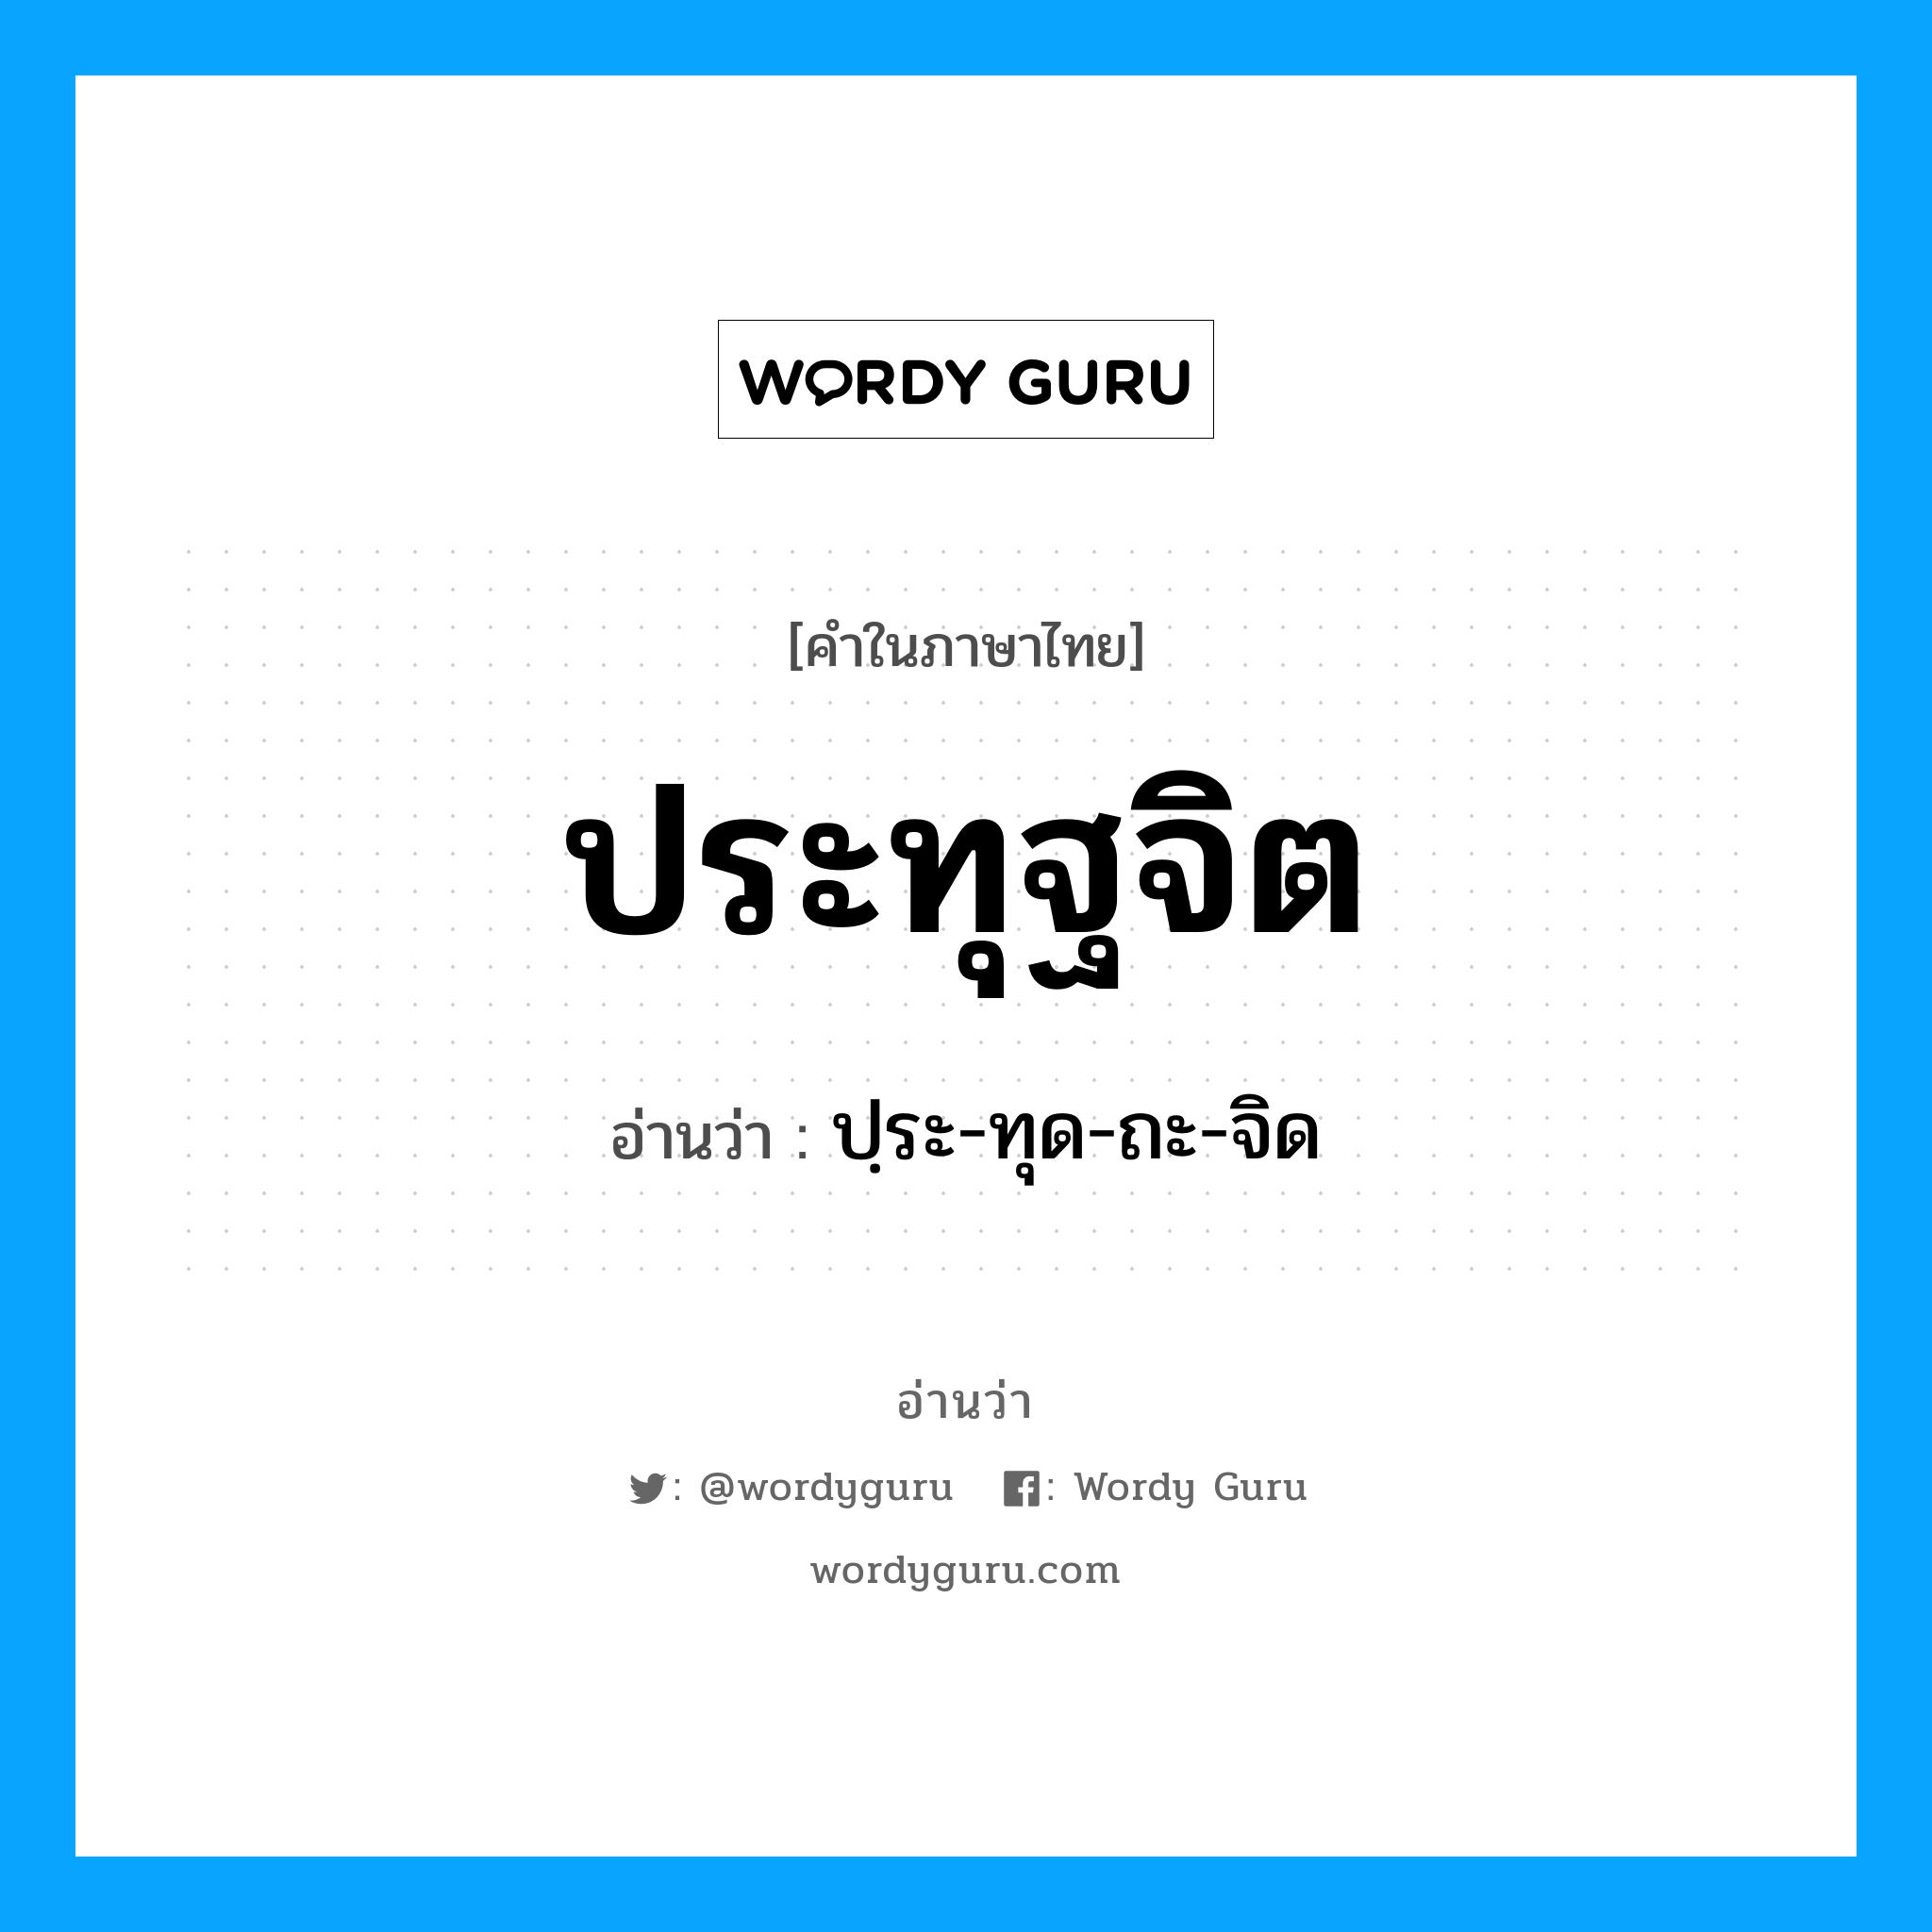 ปฺระ-ทุด-ถะ-จิด เป็นคำอ่านของคำไหน?, คำในภาษาไทย ปฺระ-ทุด-ถะ-จิด อ่านว่า ประทุฐจิต